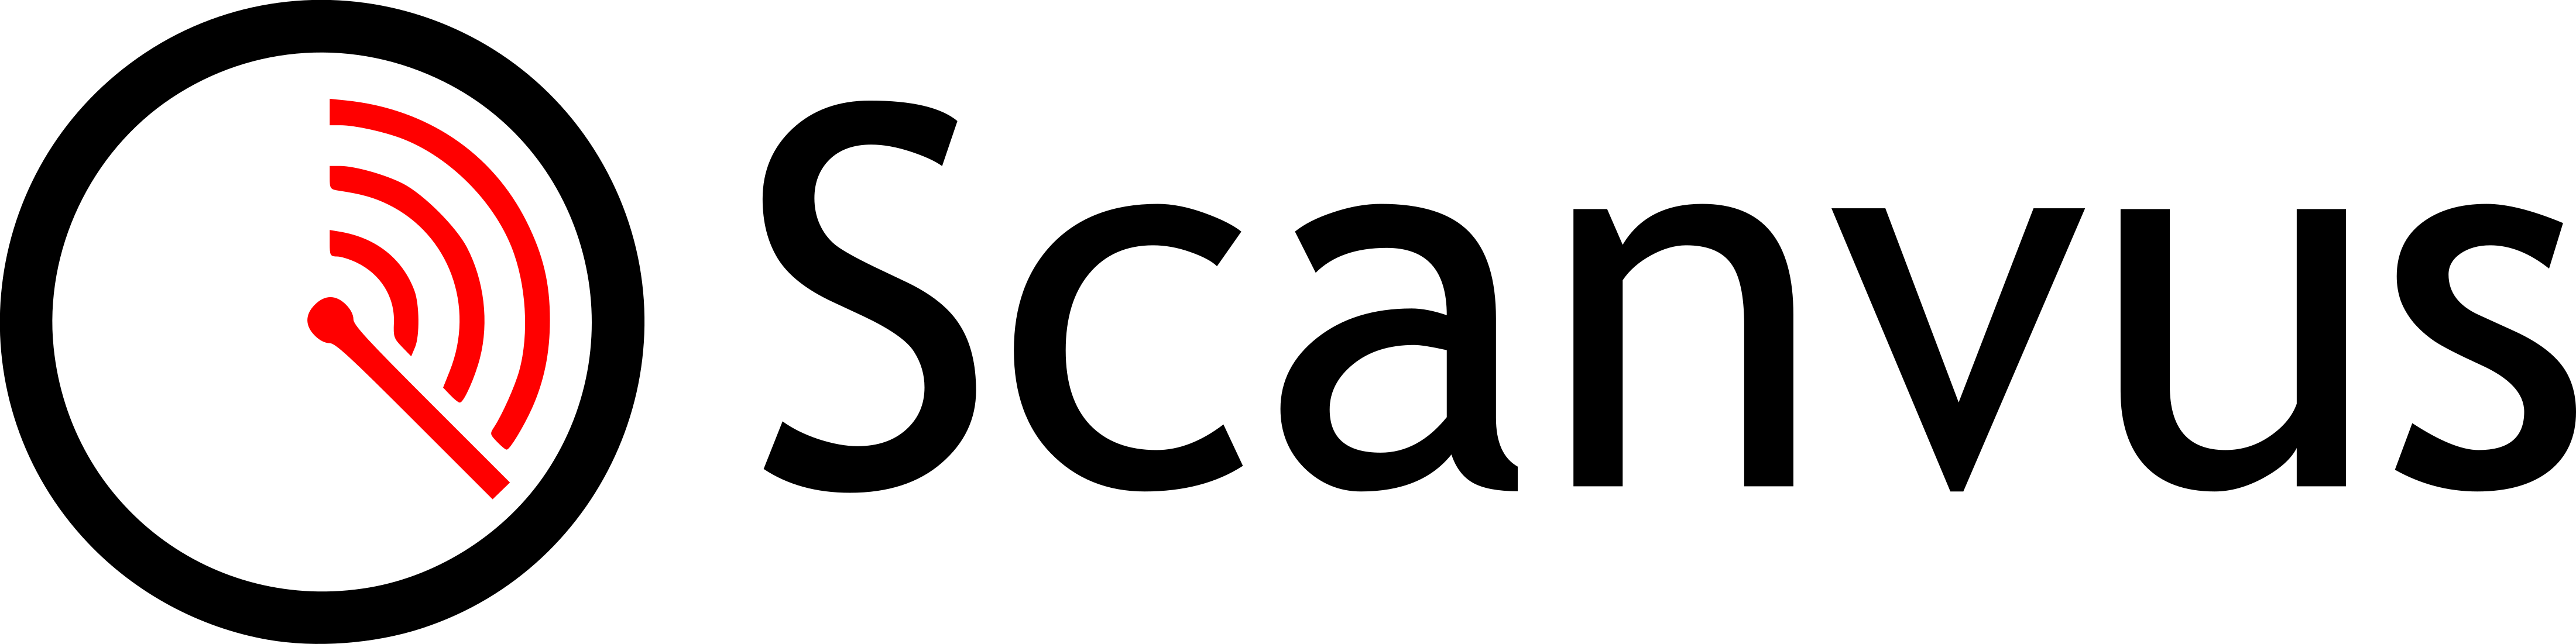 scanvus logo